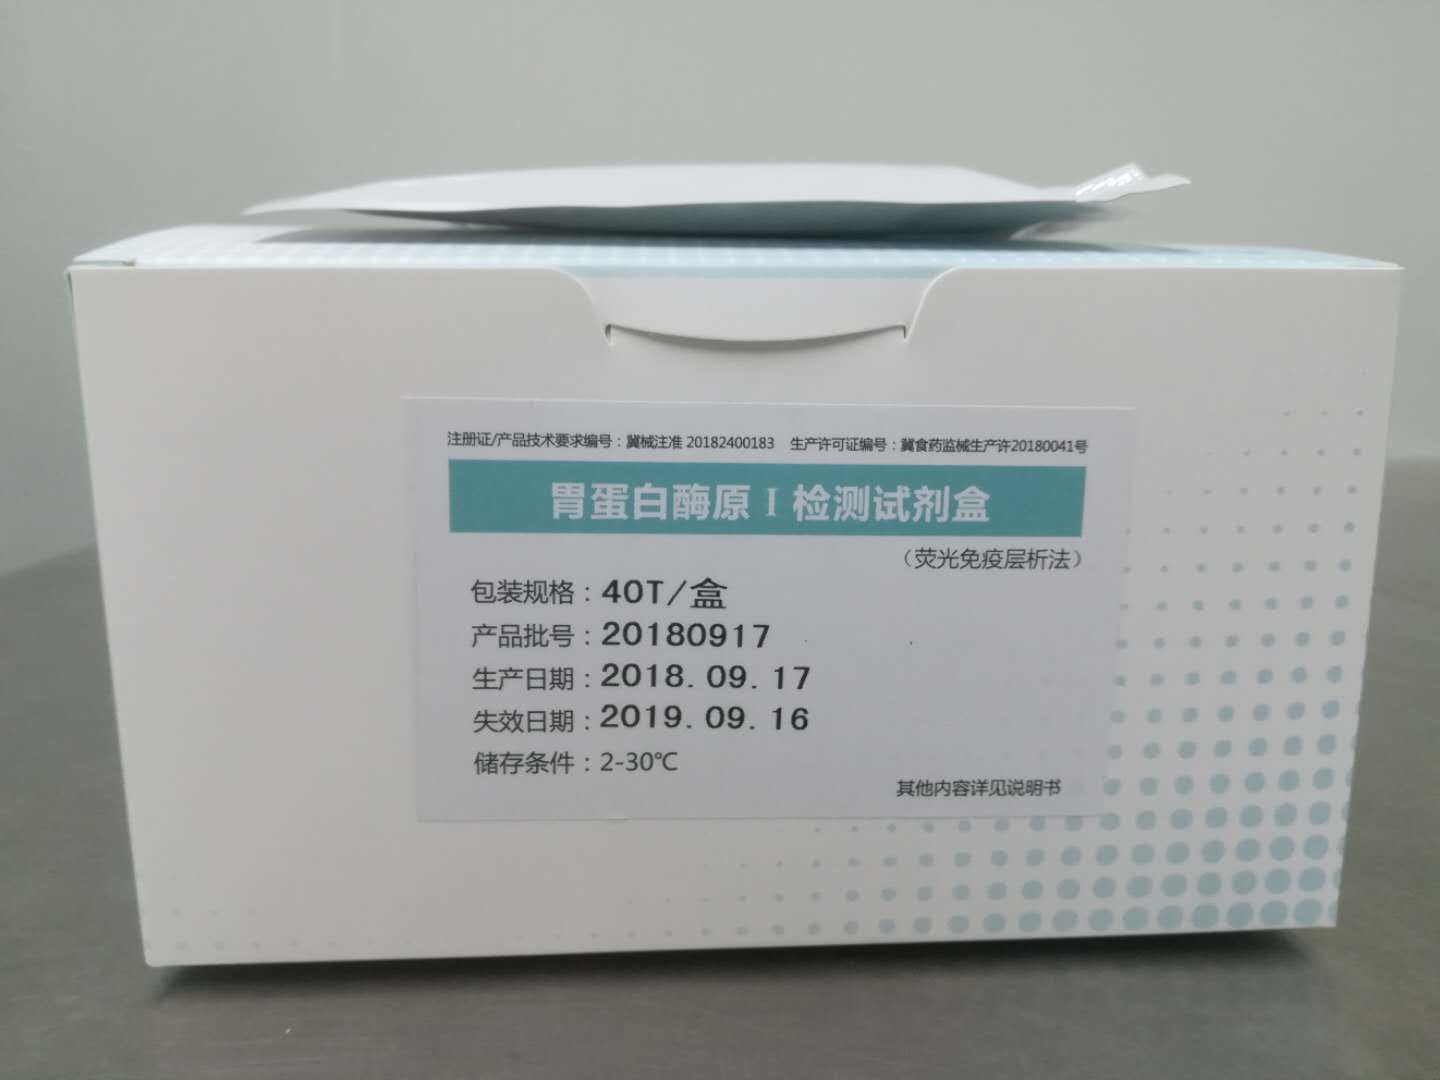 【博洋】胃蛋白酶原I检测试剂盒（荧光免疫层析法）